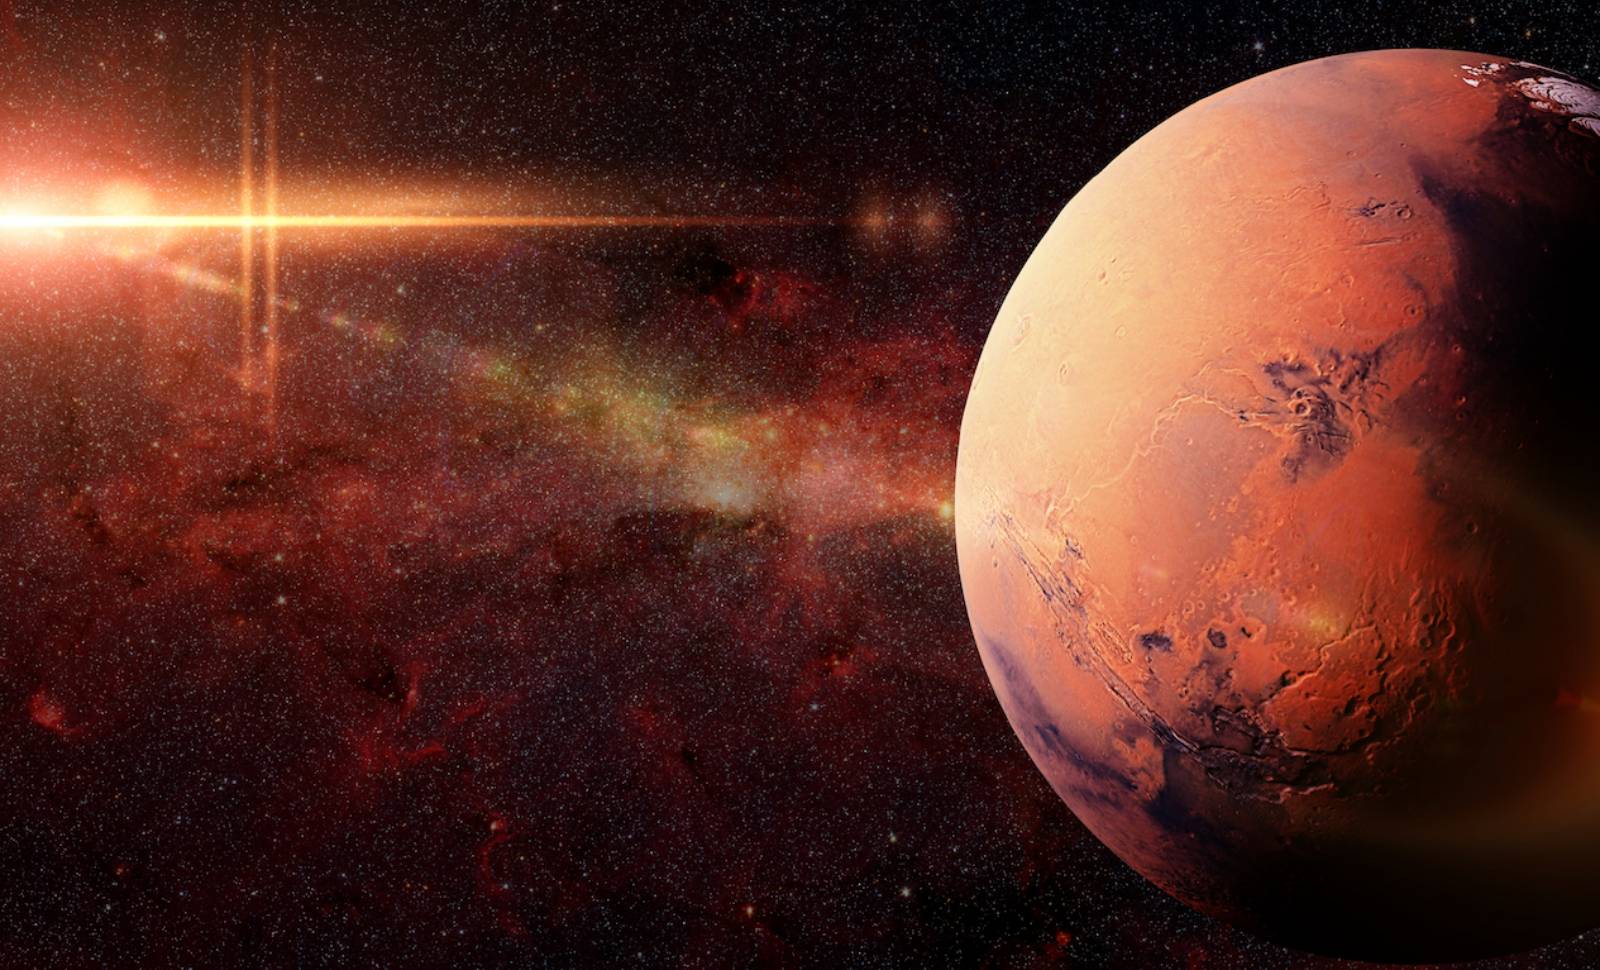 MADRINA. Immagine INCREDIBILE da Marte che ha scioccato Internet